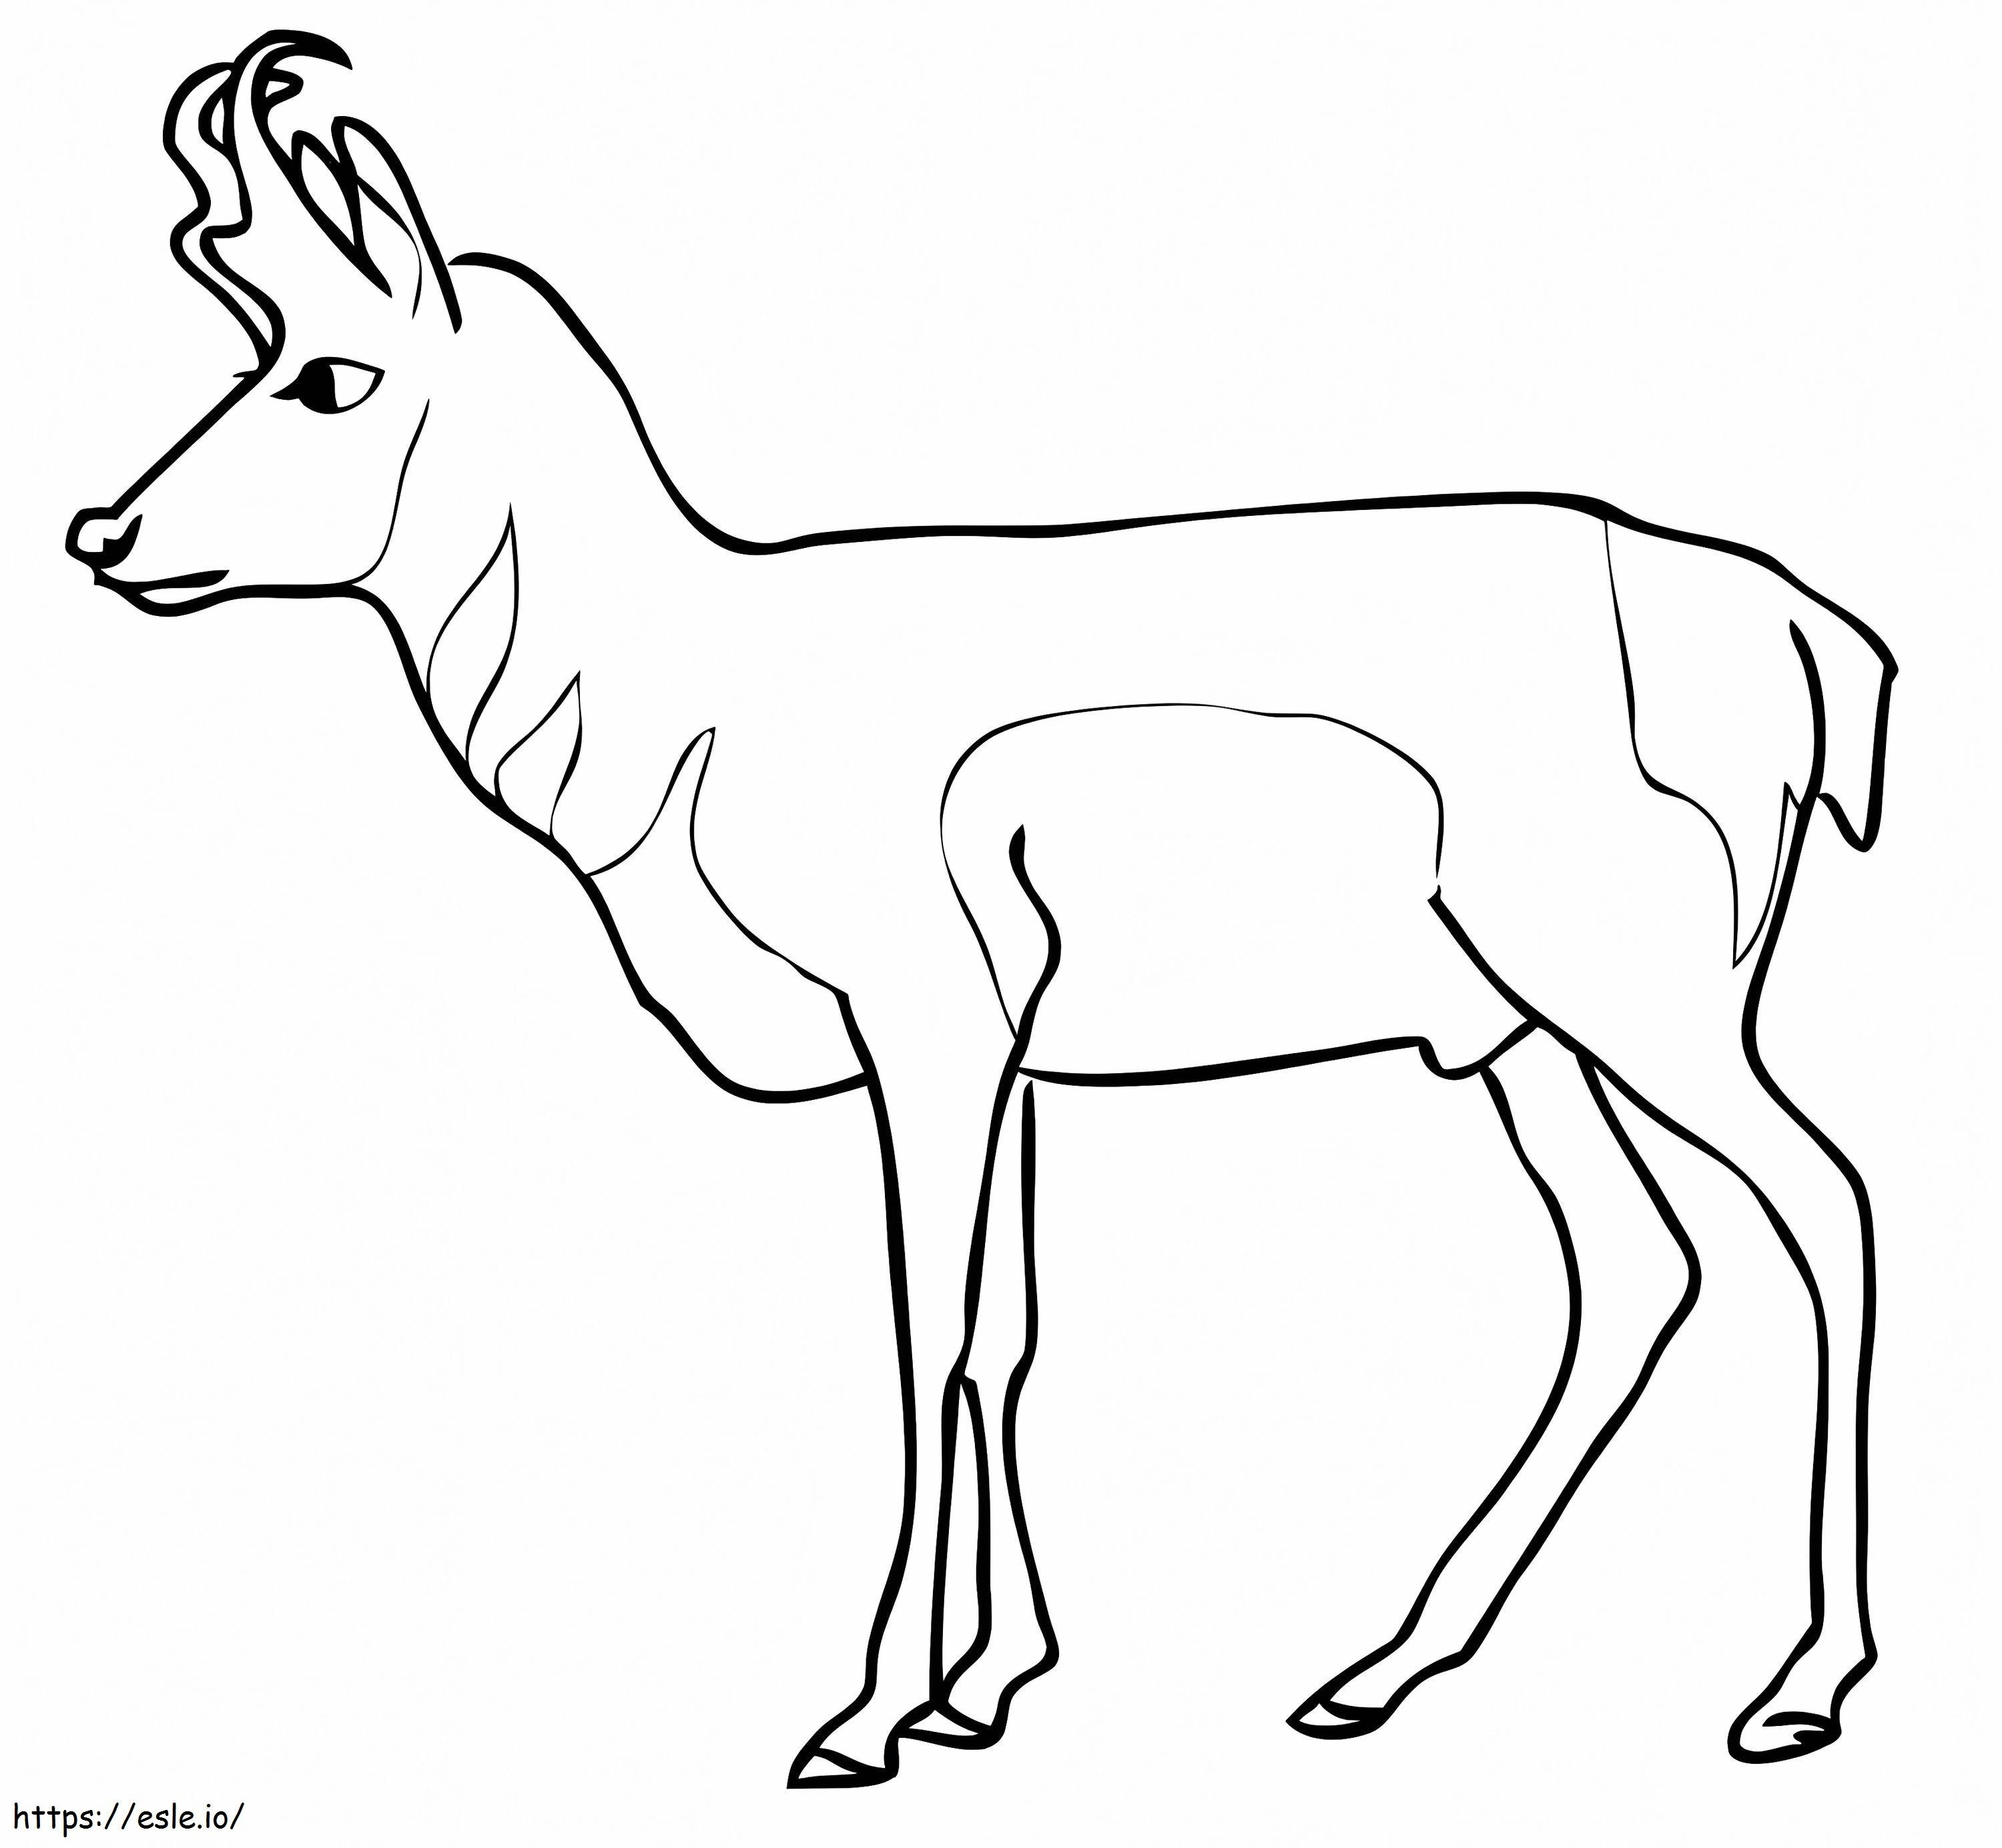 Pronghorn Antilopu boyama